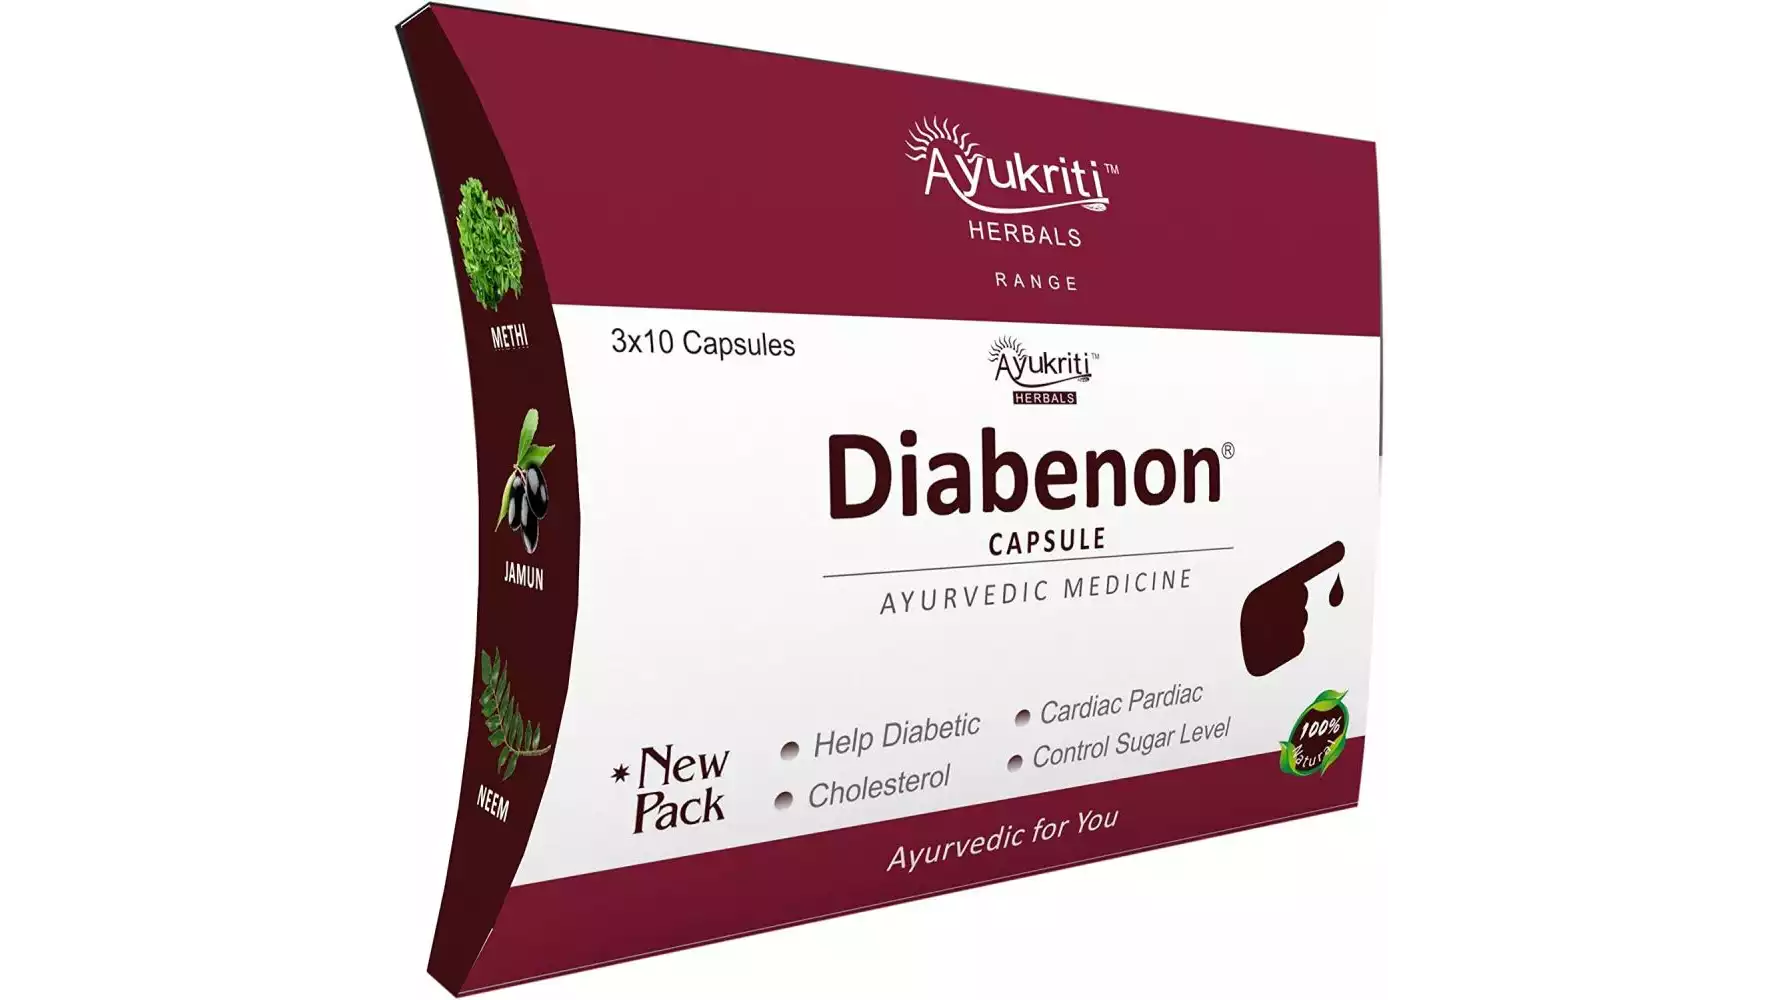 Ayukriti Herbals Diabenon Capsule For Diabetes (10caps, Pack of 3)